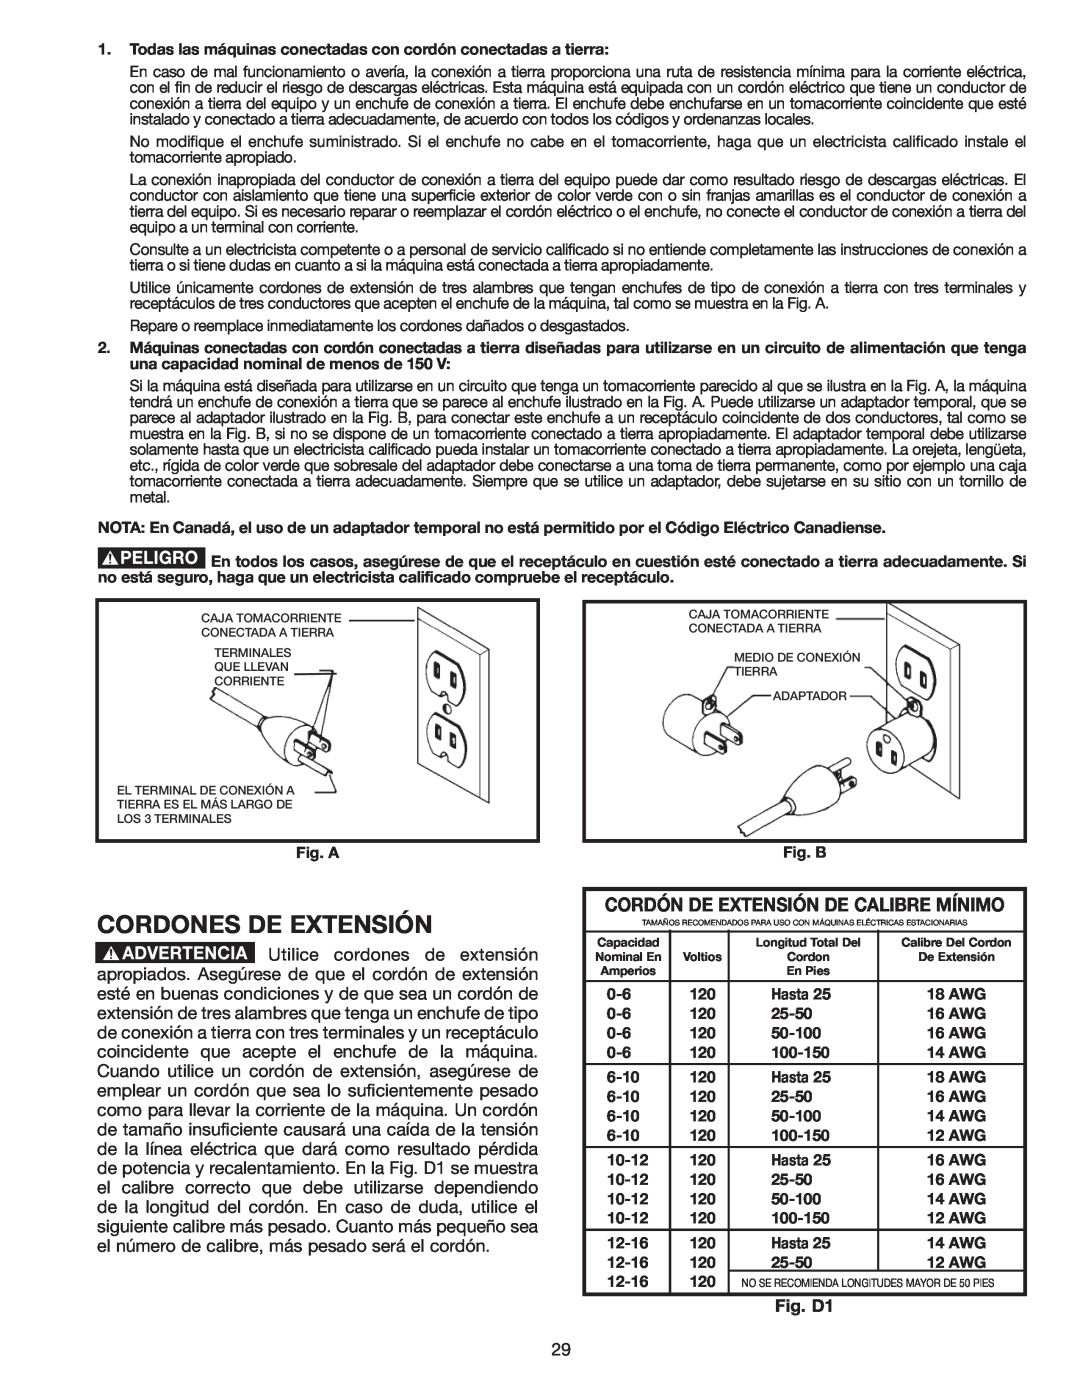 Delta AP-100 instruction manual Cordones De Extensión, Cordón De Extensión De Calibre Mínimo, Fig. D1 